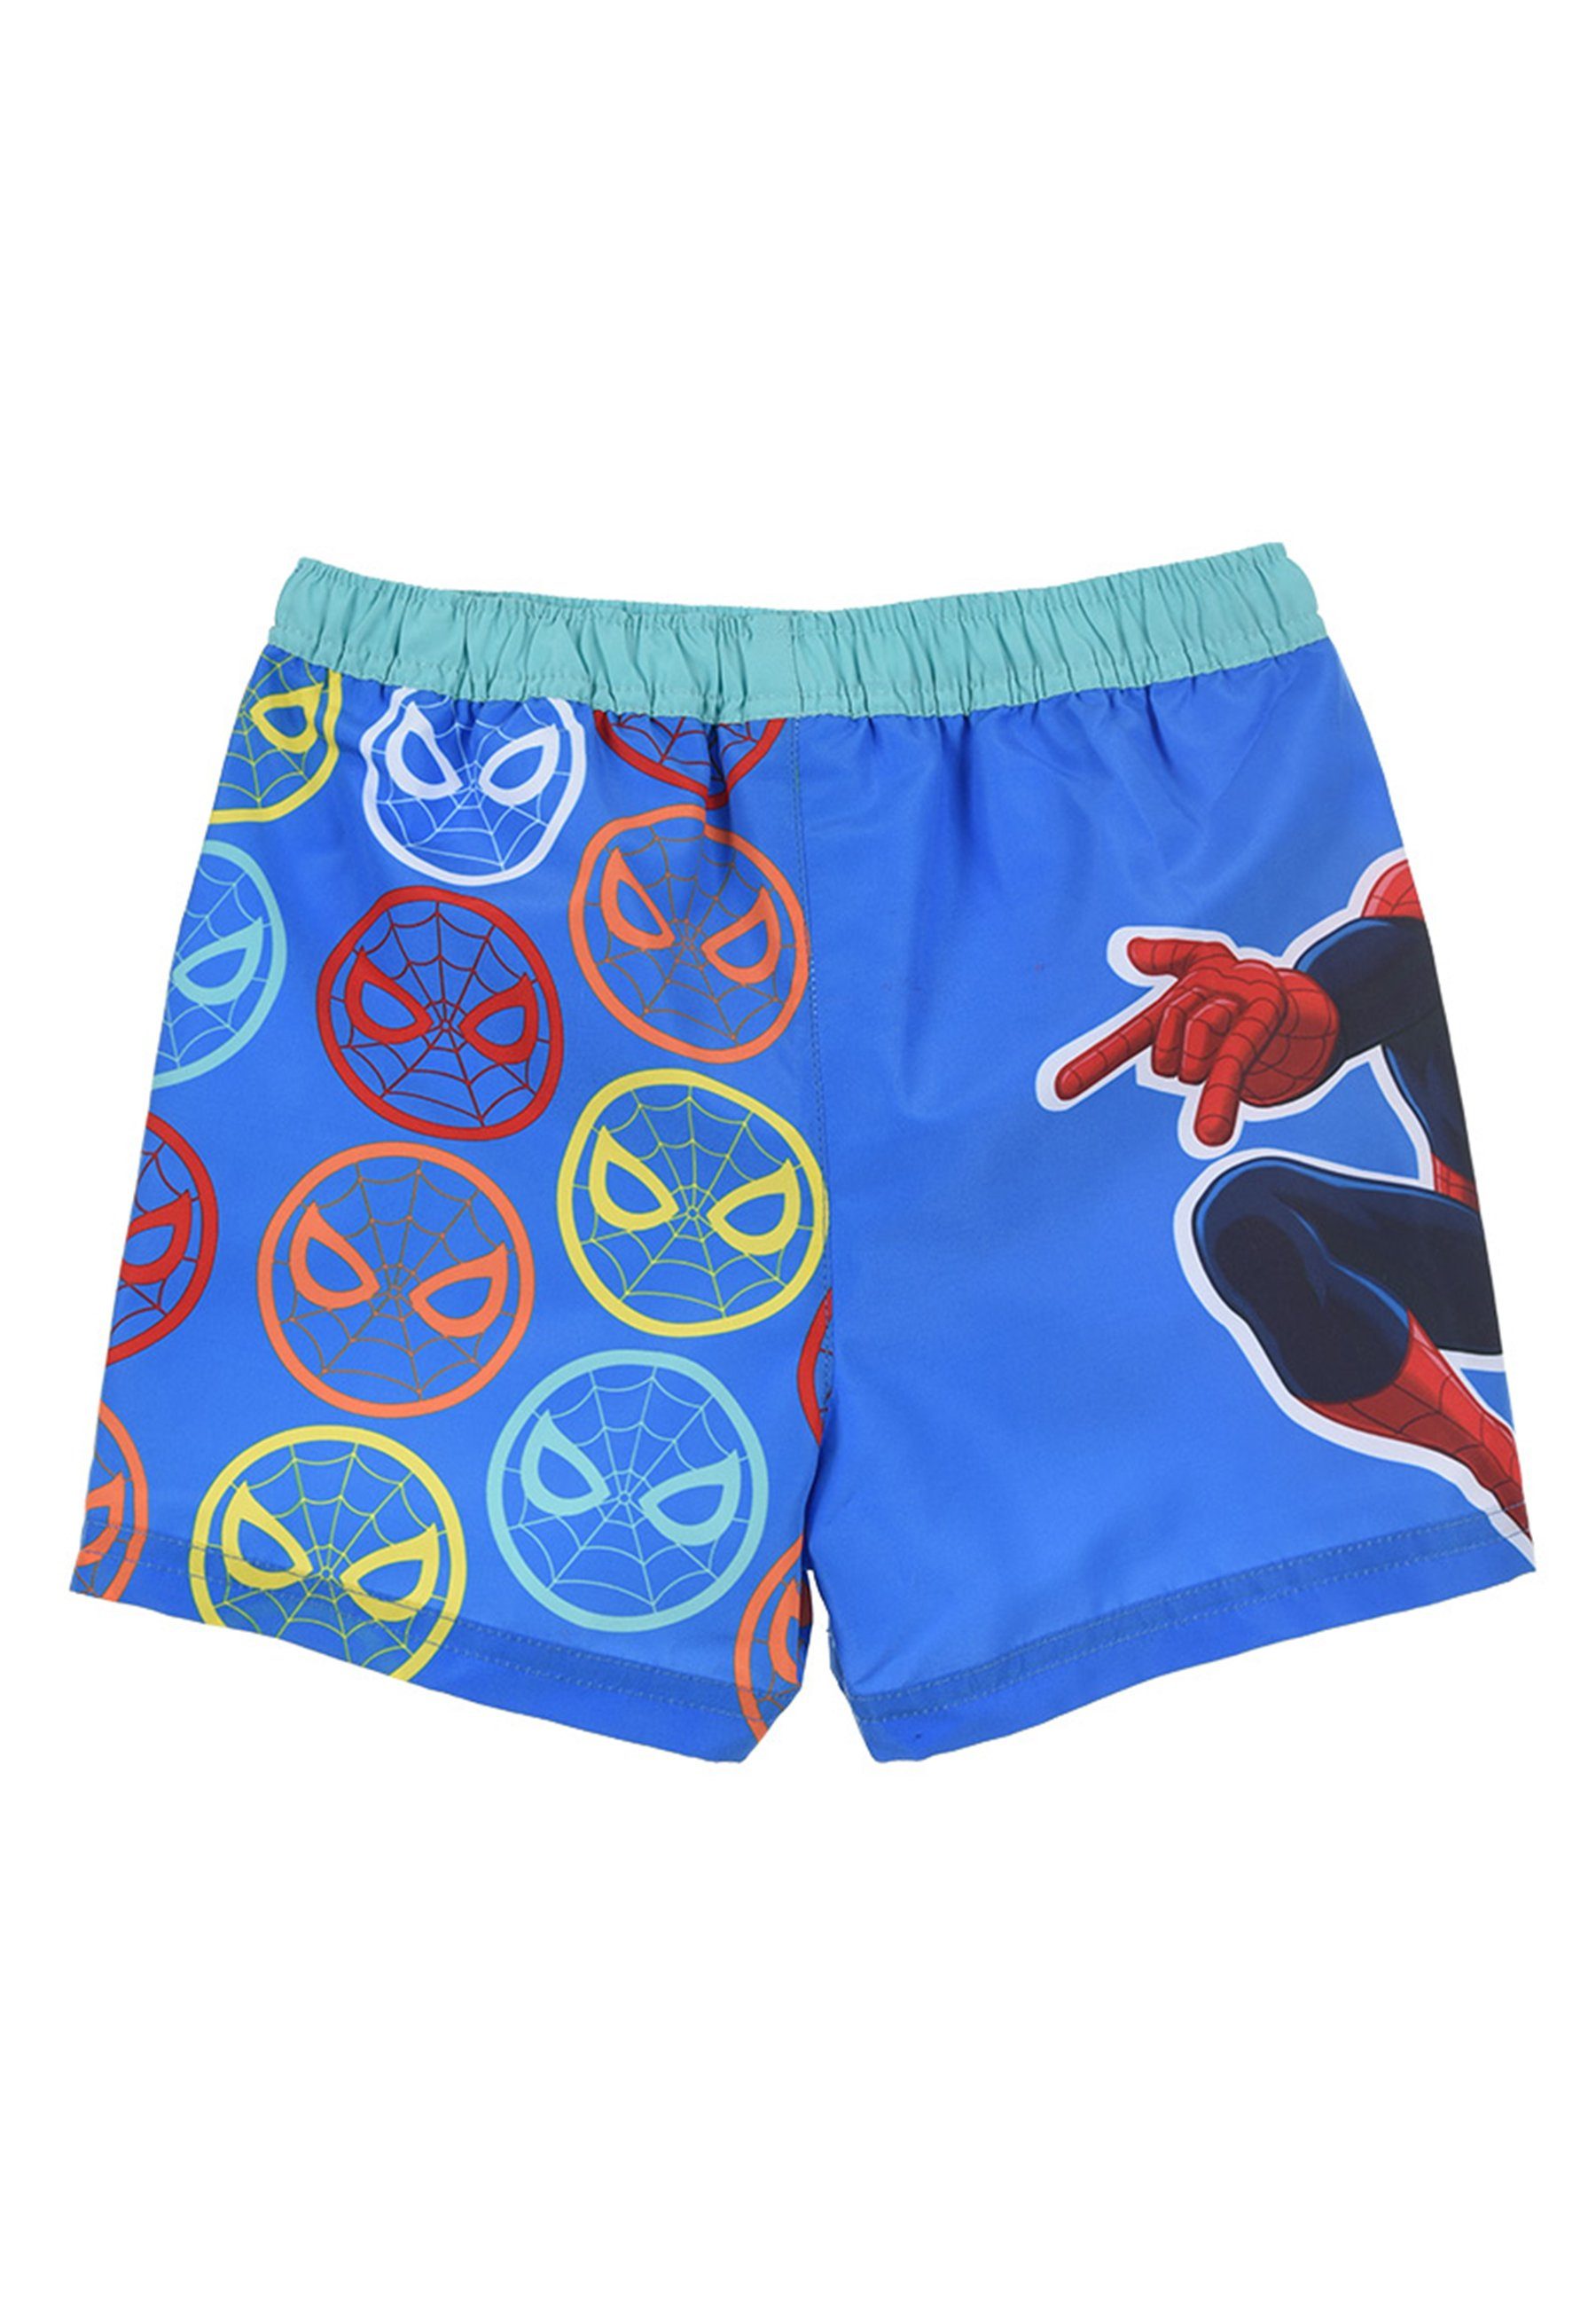 Spiderman Badeshorts Marvel Jungen Blau Kinder Bermuda-Shorts Badepants Badehose